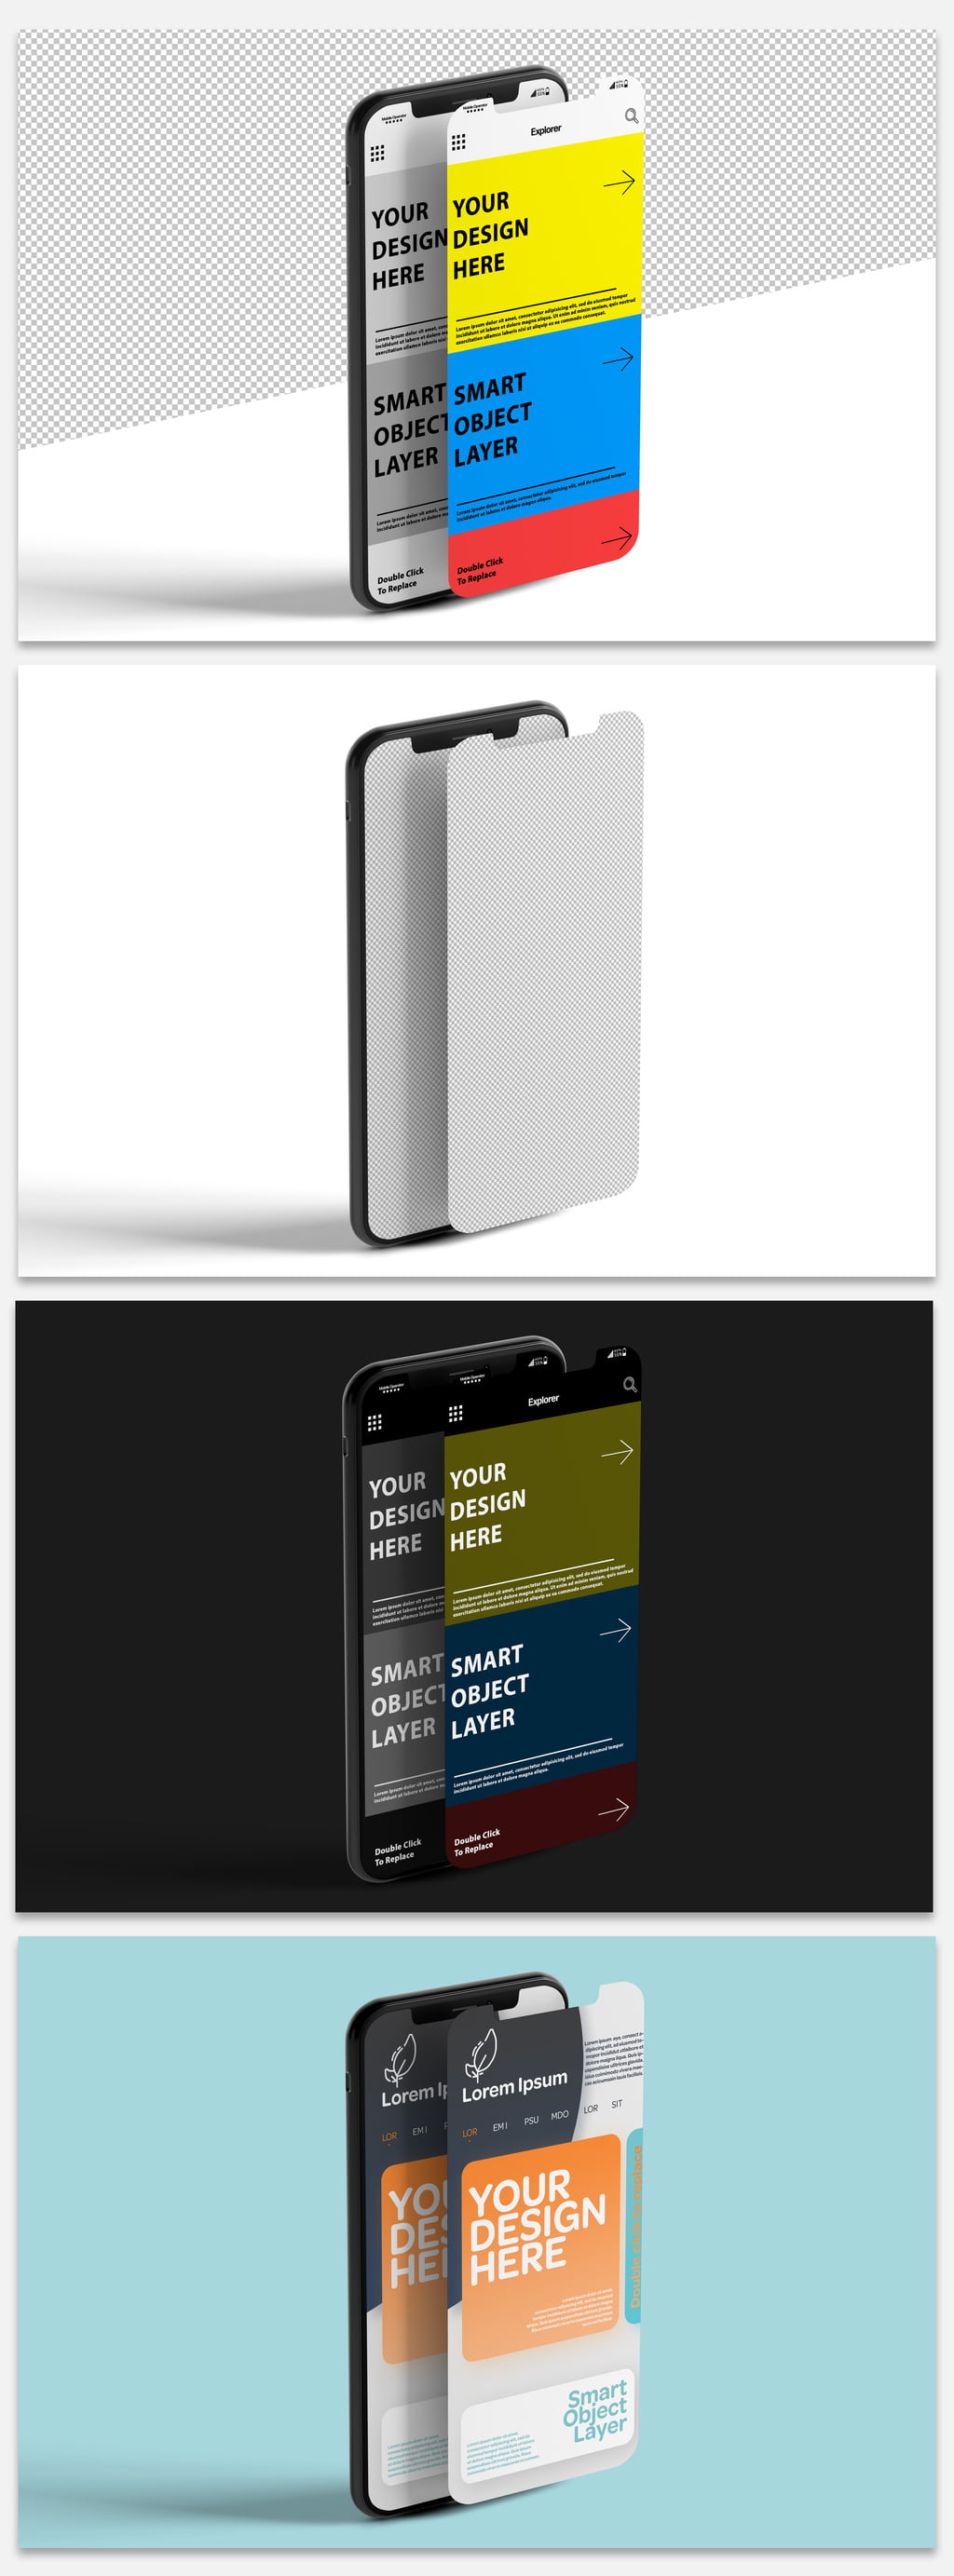 دانلود ماک آپ صفحه نمایش موبایل Mockup of 2 Smartphone Screen Designs